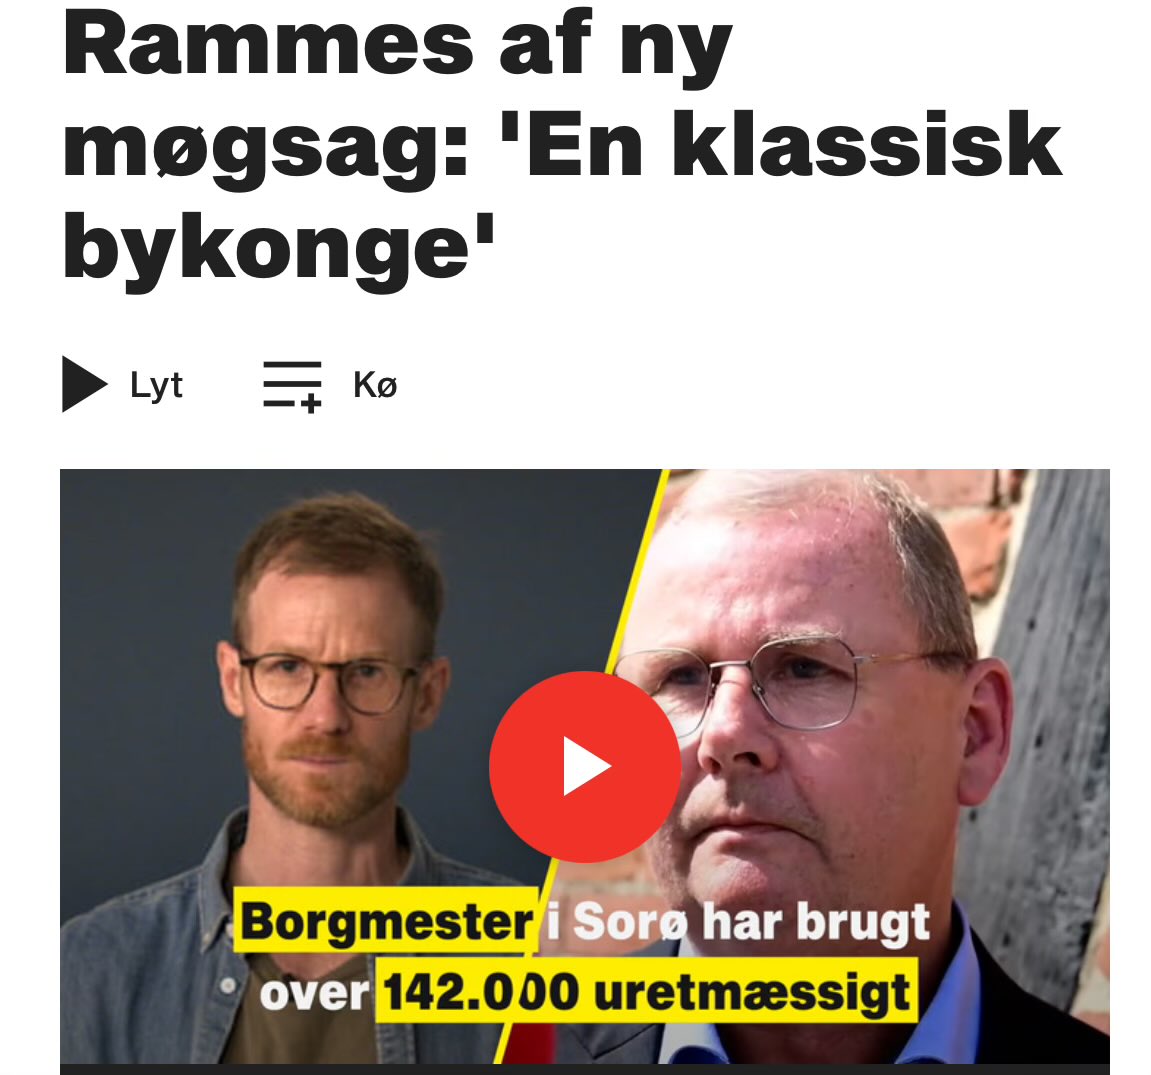 Borgmester i Sorø Gert Jørgensen (K) gav partifælle bestyrelses-ben uden at have mandat til det. Det politiske flertal bag ham smuldrer efter de mange møgsager @btdk #dkpol bt.dk/samfund/rammes…